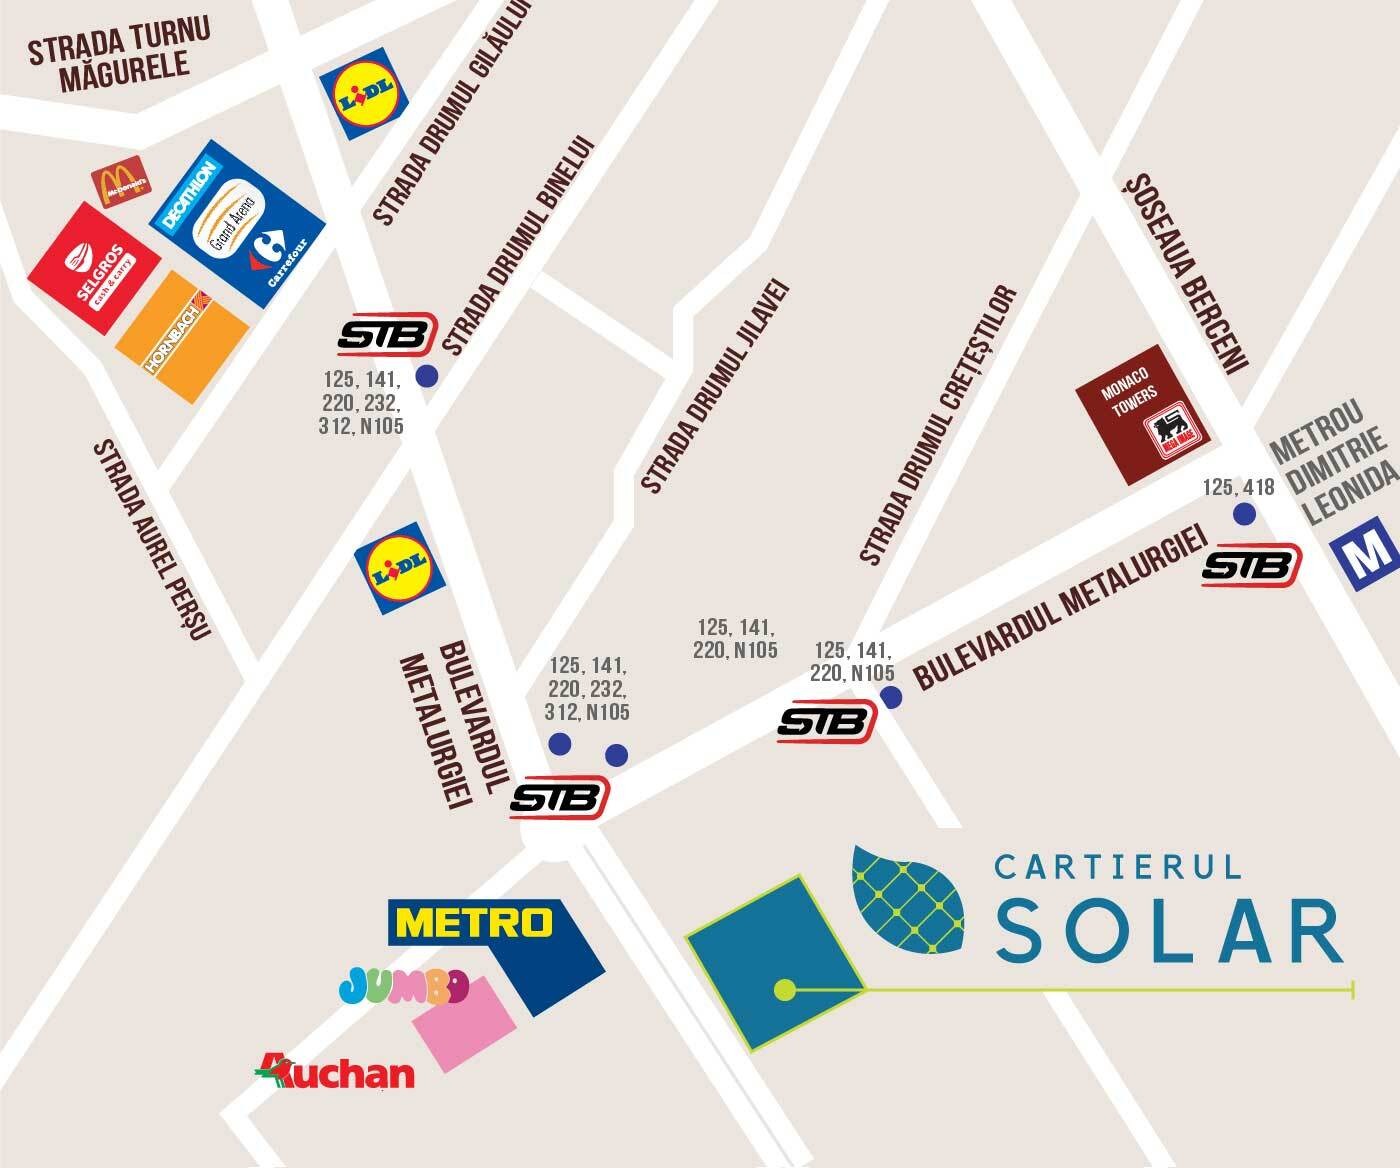 Locatie cartierul solar